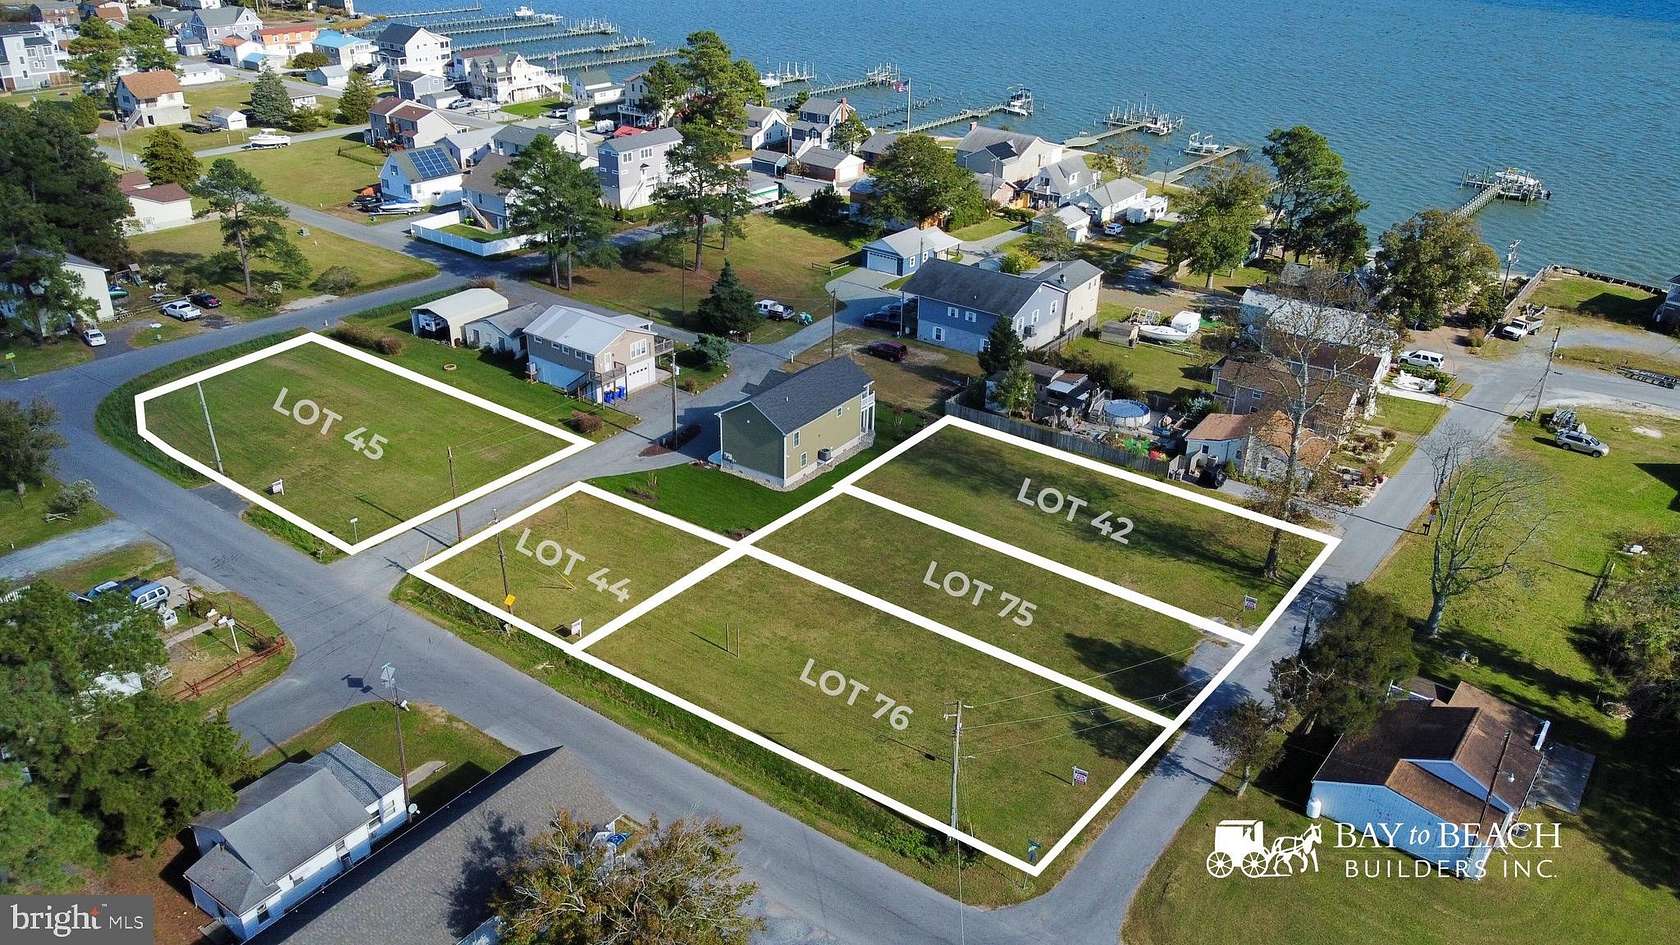 0.14 Acres of Residential Land for Sale in Millsboro, Delaware